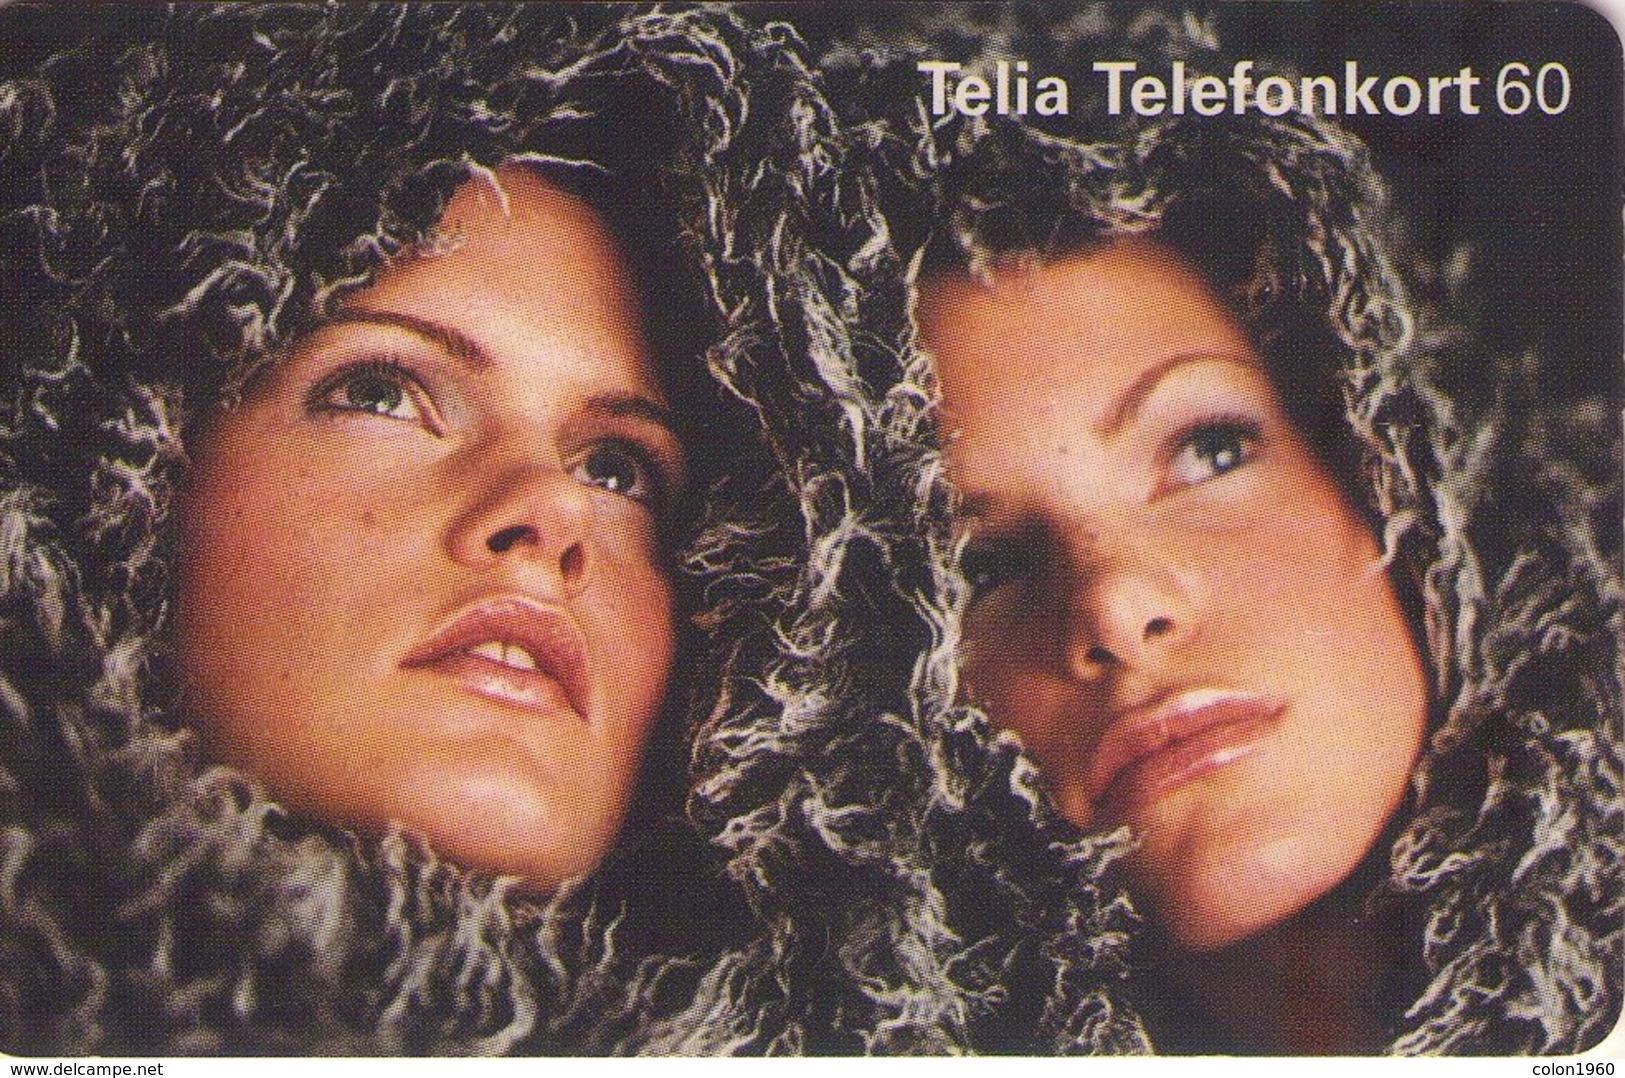 SUECIA. SE-TEL-060-0112. Twins. 02-2000. (466) - Suecia